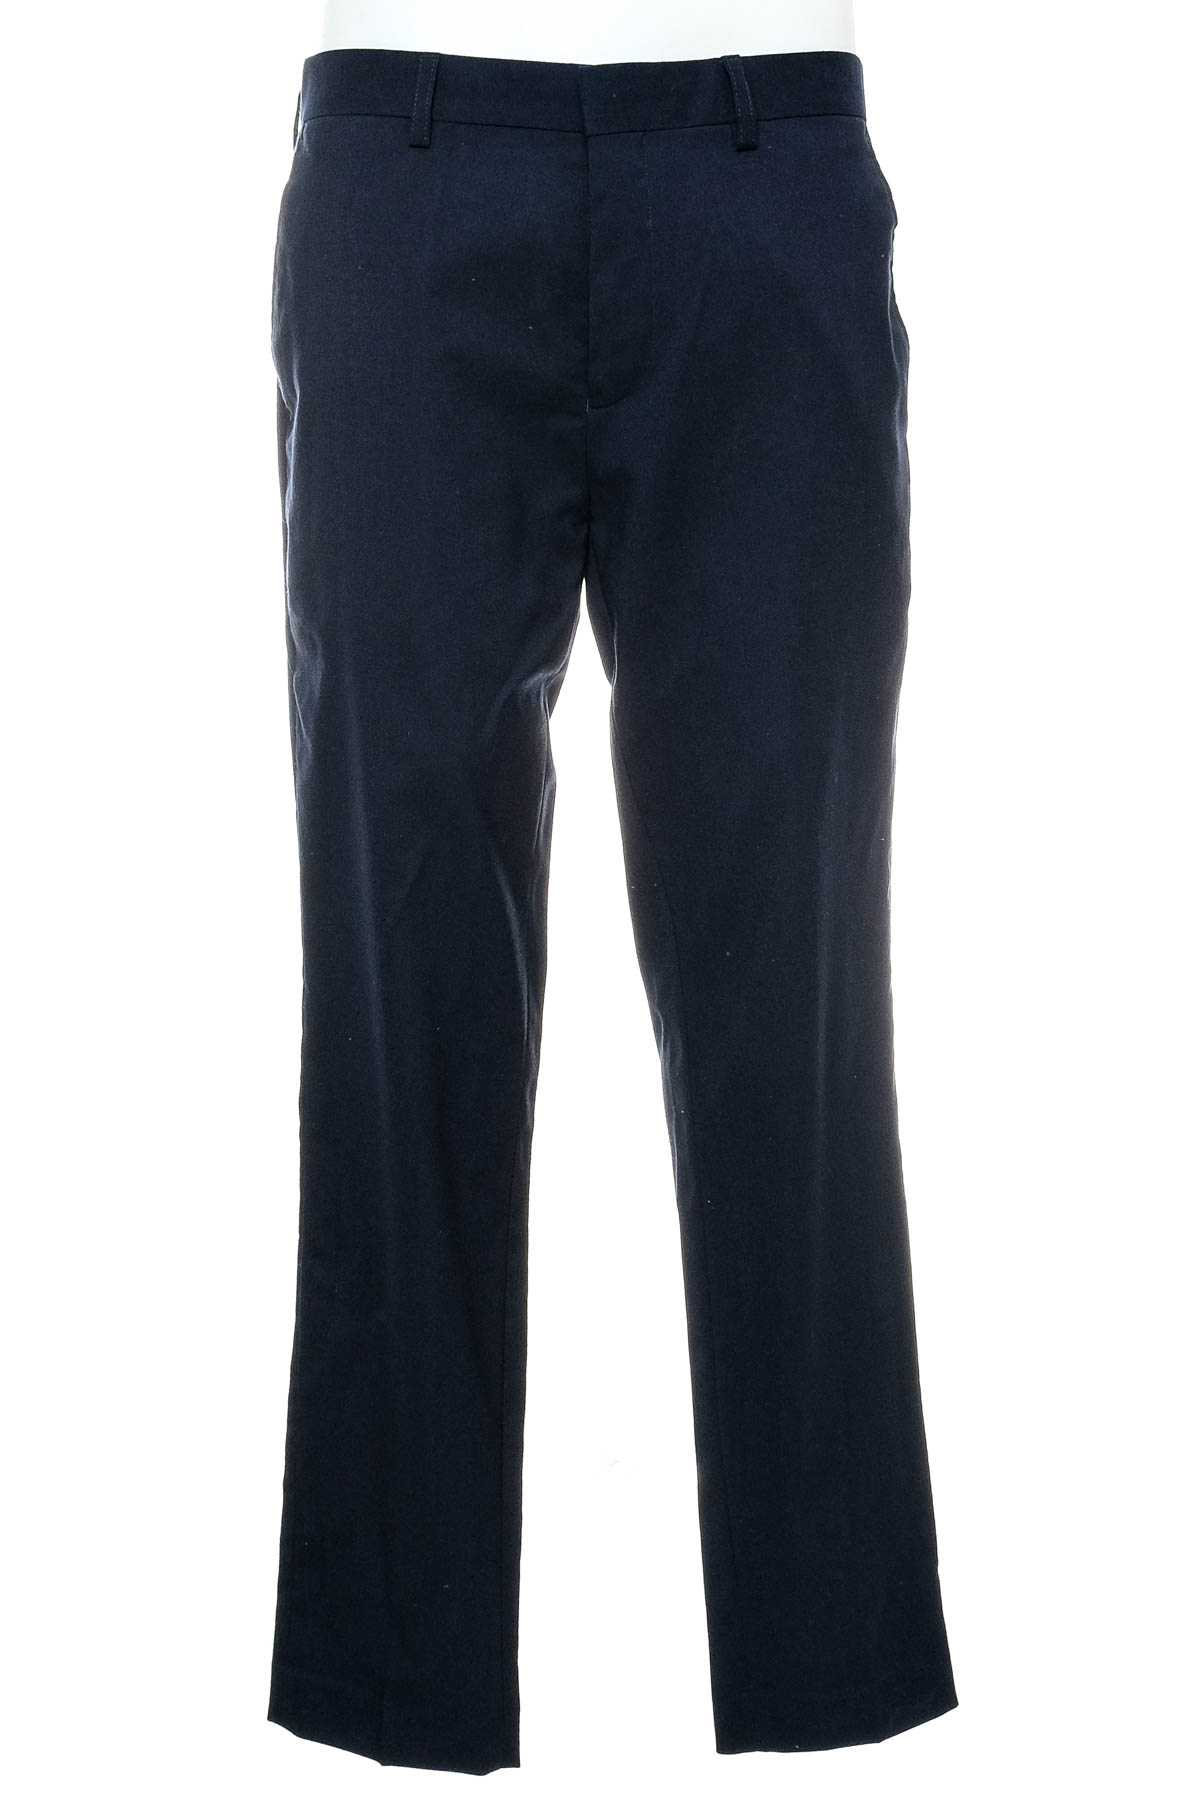 Pantalon pentru bărbați - ONLY & SONS - 0